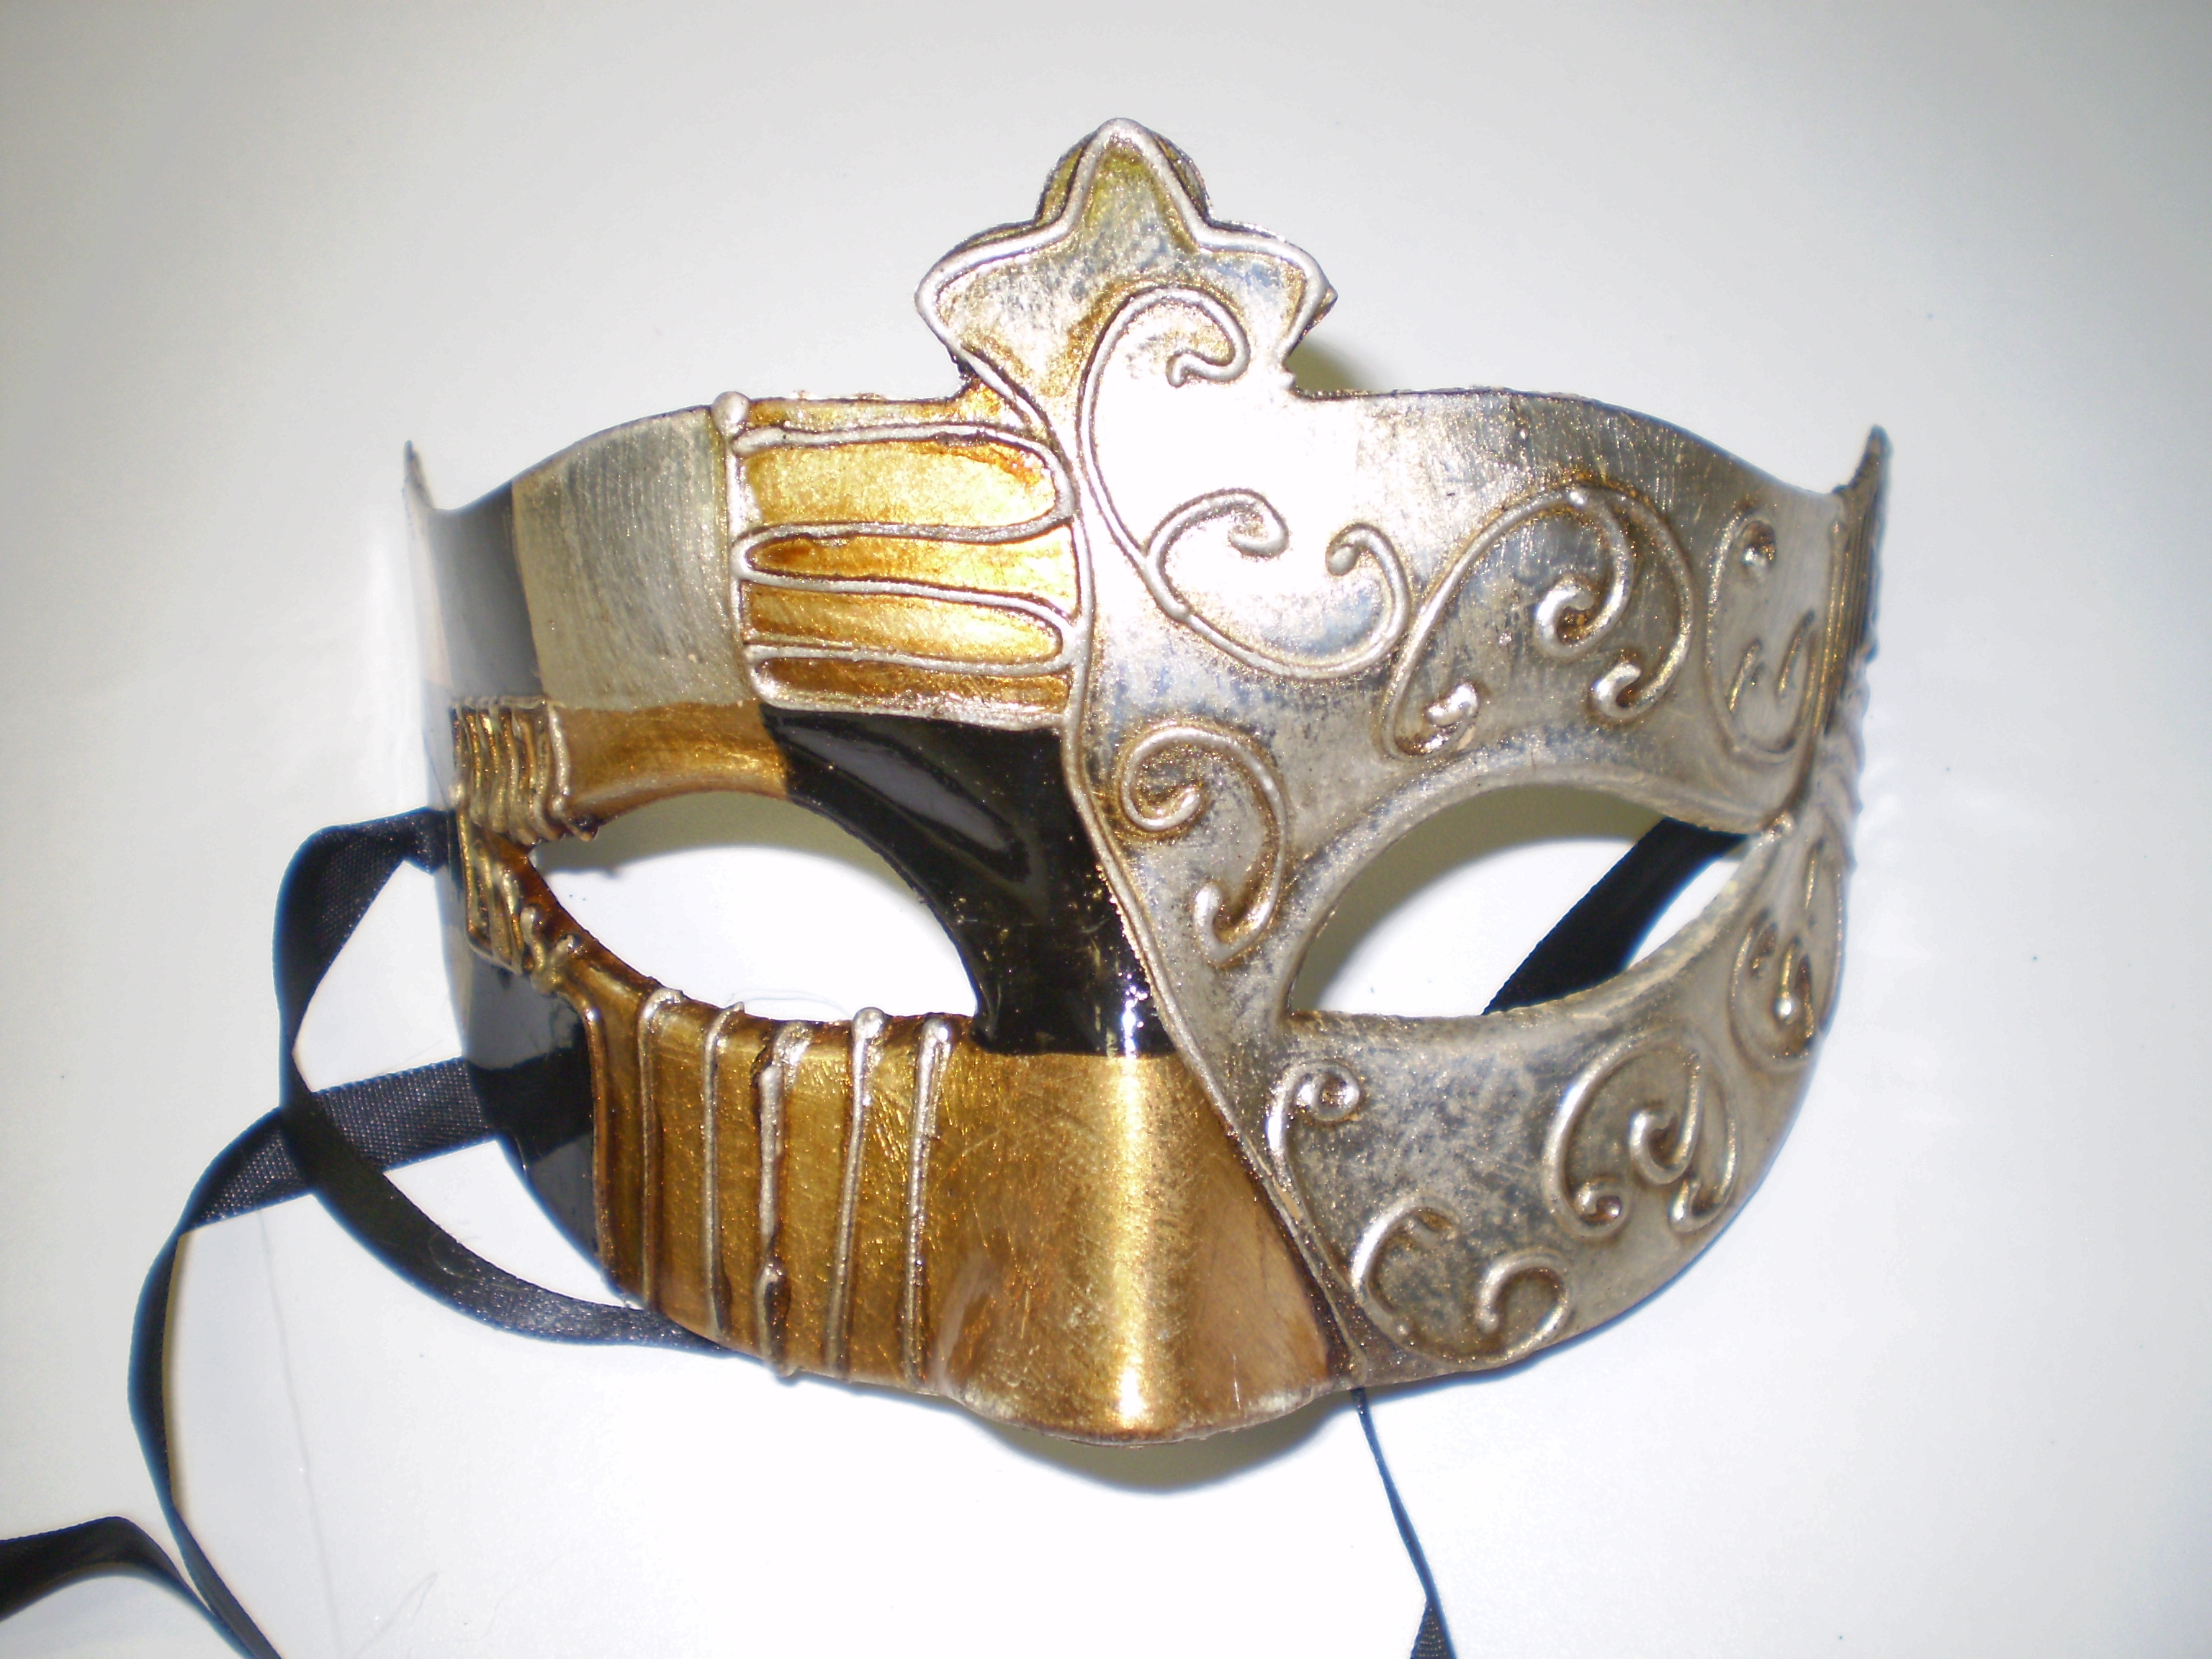 Masquerade ball masks